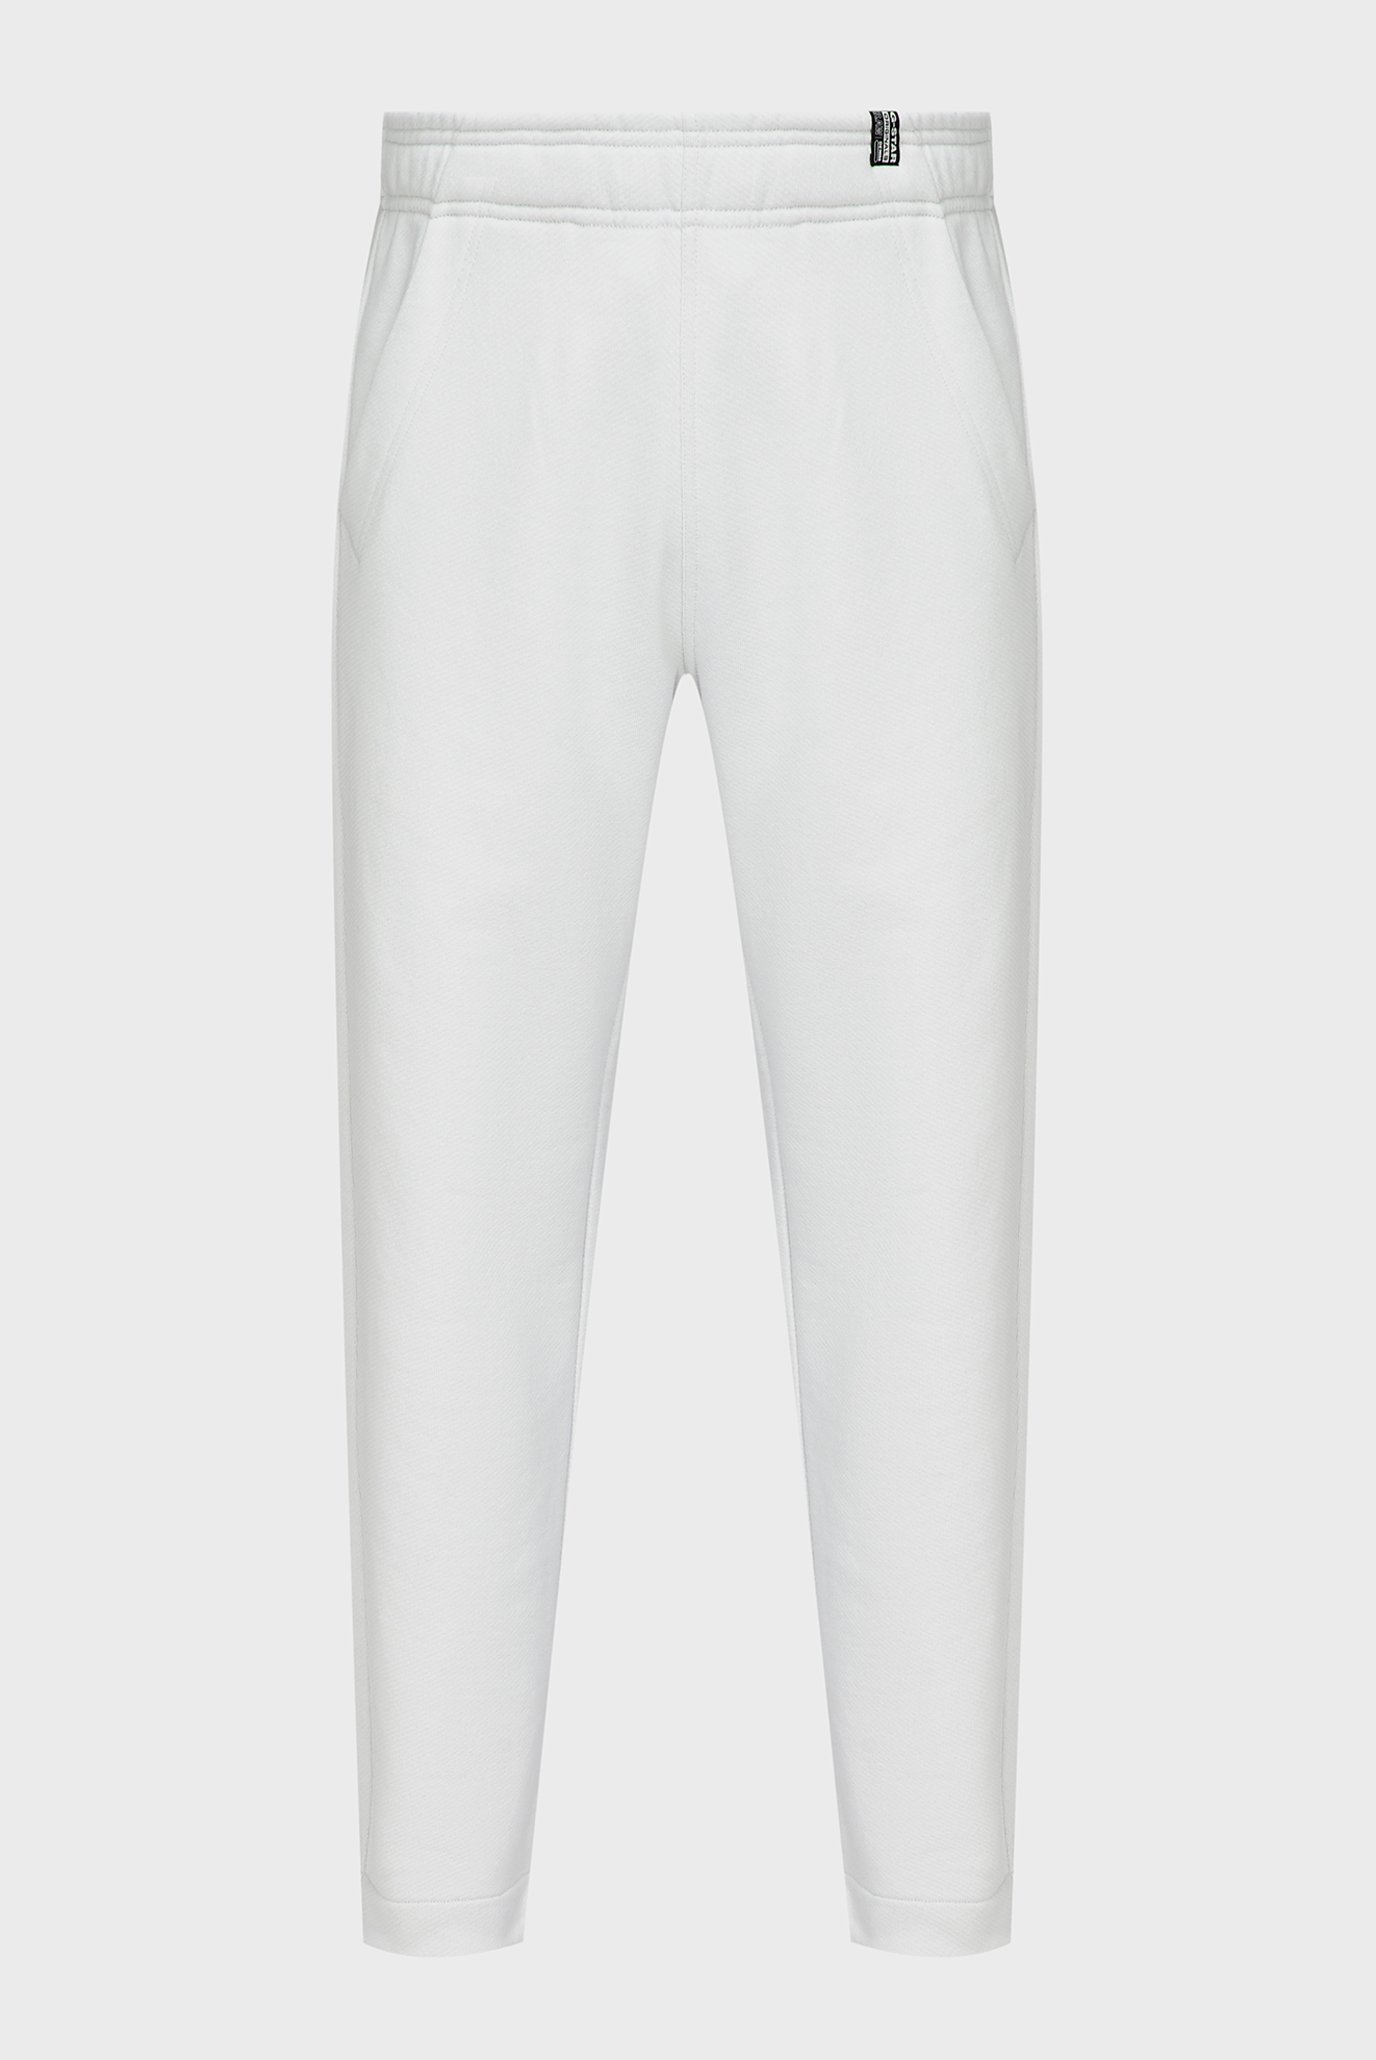 Білі спортивні штани Essential loose tapered sw pant (унісекс) 1